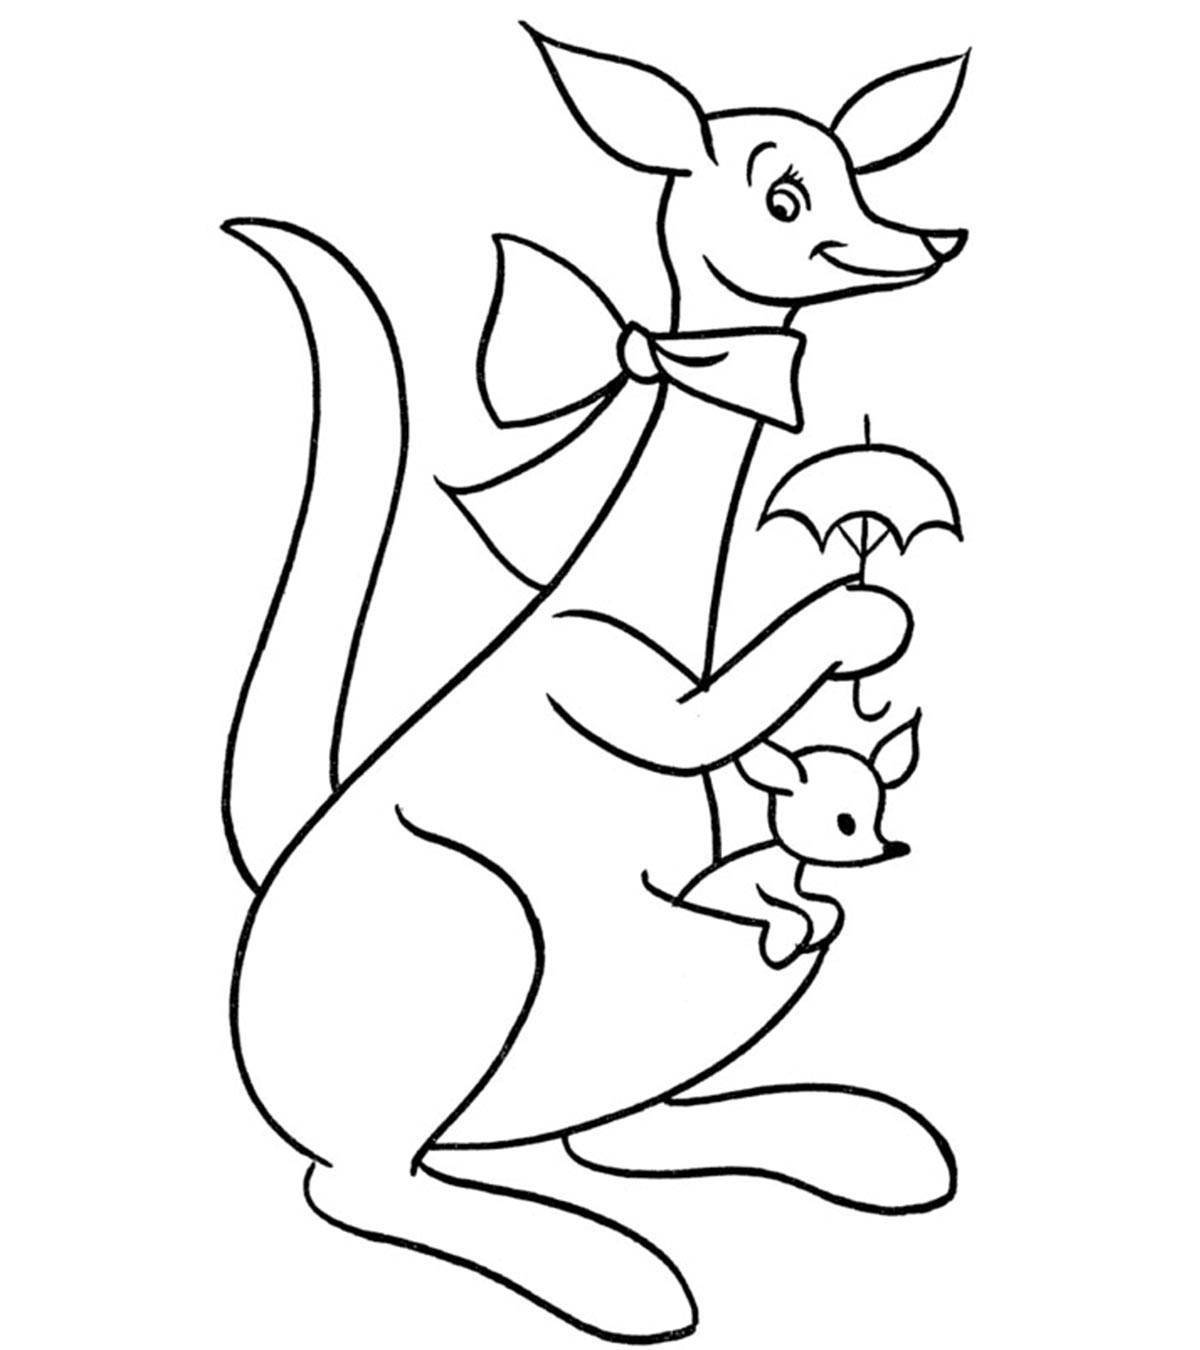 Увлекательная раскраска кенгуру для детей